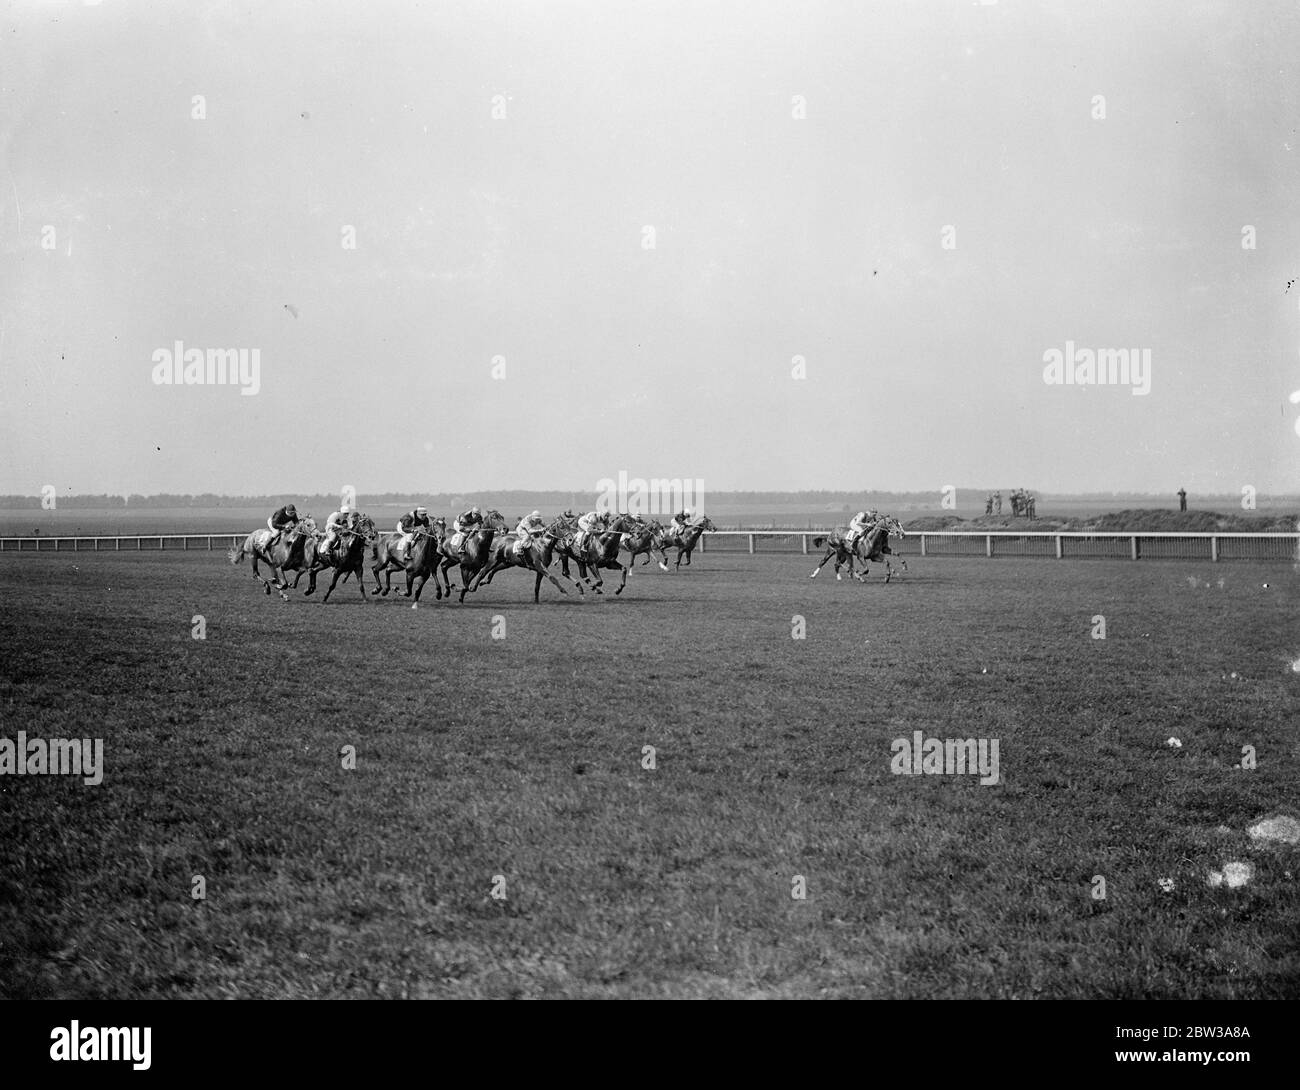 Columbo weiterhin Karriere mit Sieg in zweitausend Guineas . Lord Clanely ' s ungeschlagene Pferd Columbo gewann die zweitausend Guinea Einsätze in Newmarket, von Easton, das französische Pferd, und die Aga Khan ' s Badruddin. Foto zeigt das Feld . Mai 1934 Stockfoto